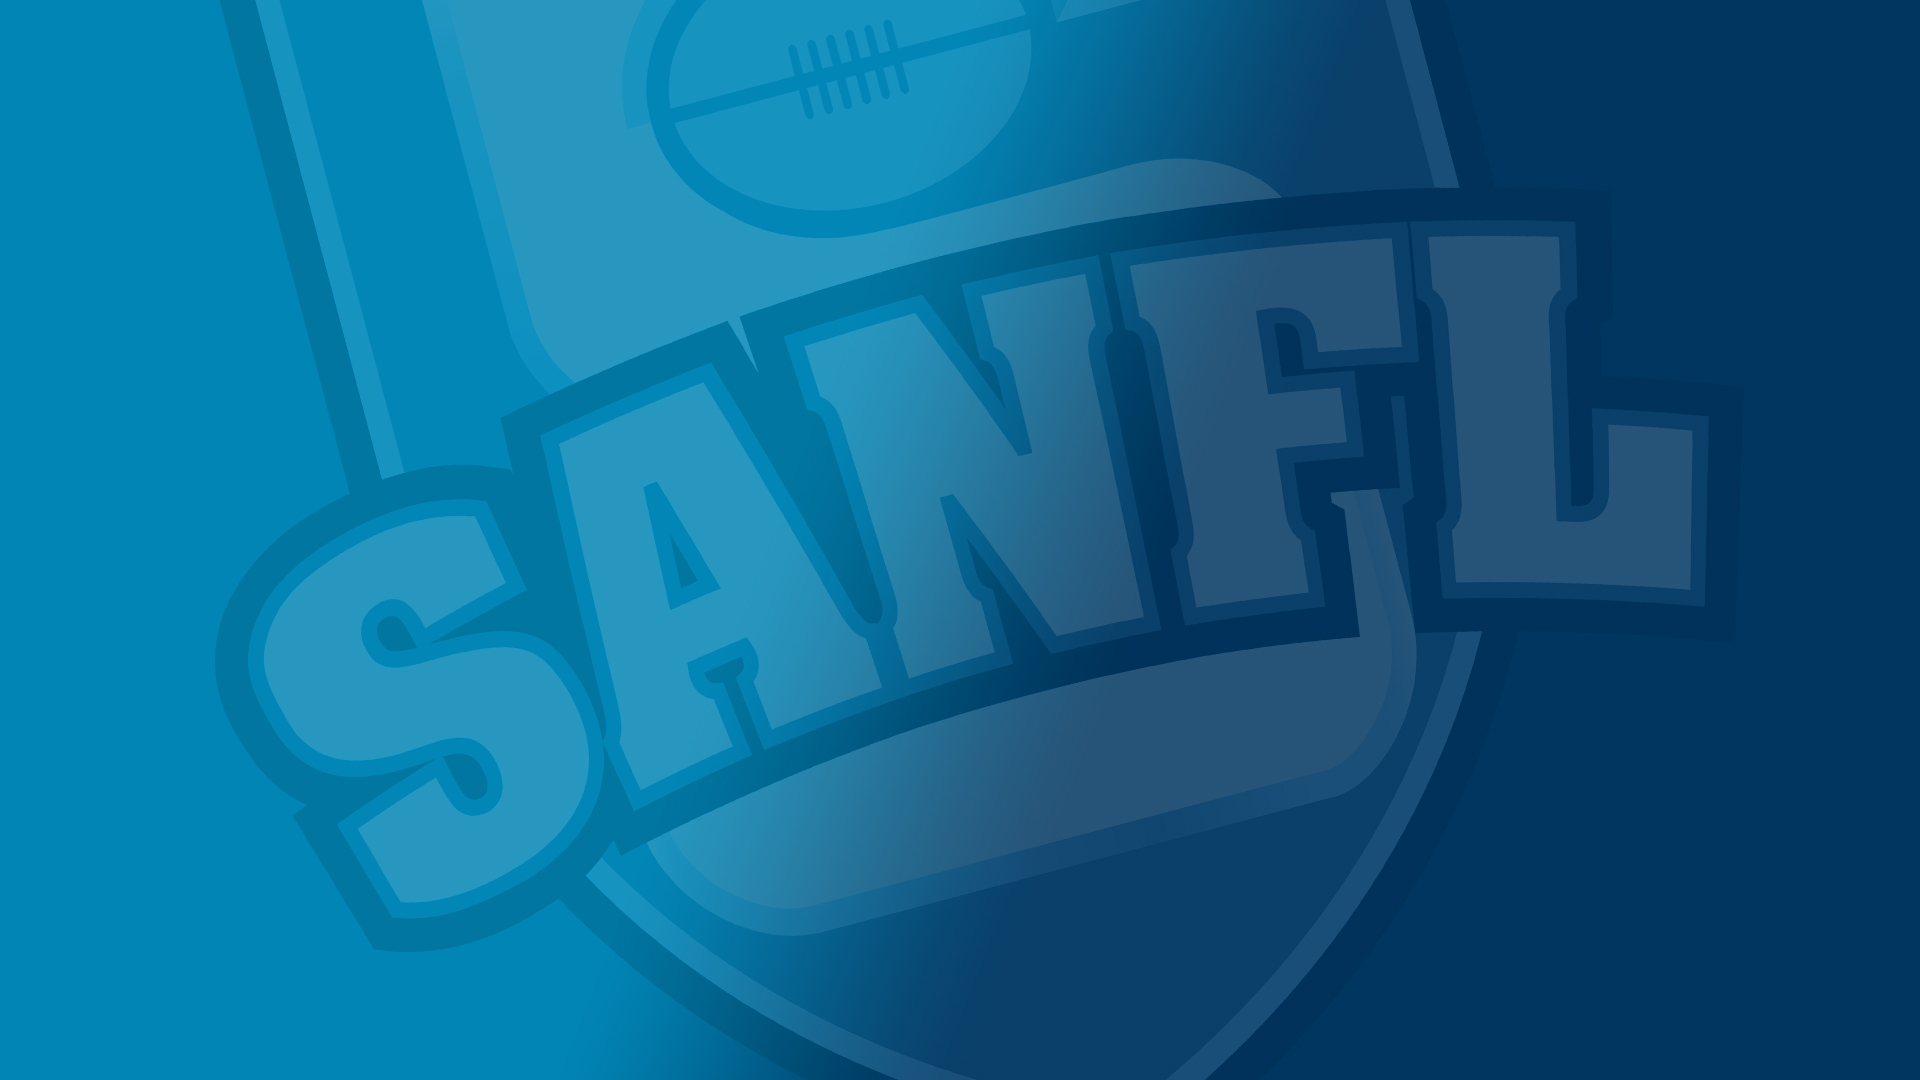 第 1 周 SANFL 决赛比赛评审小组